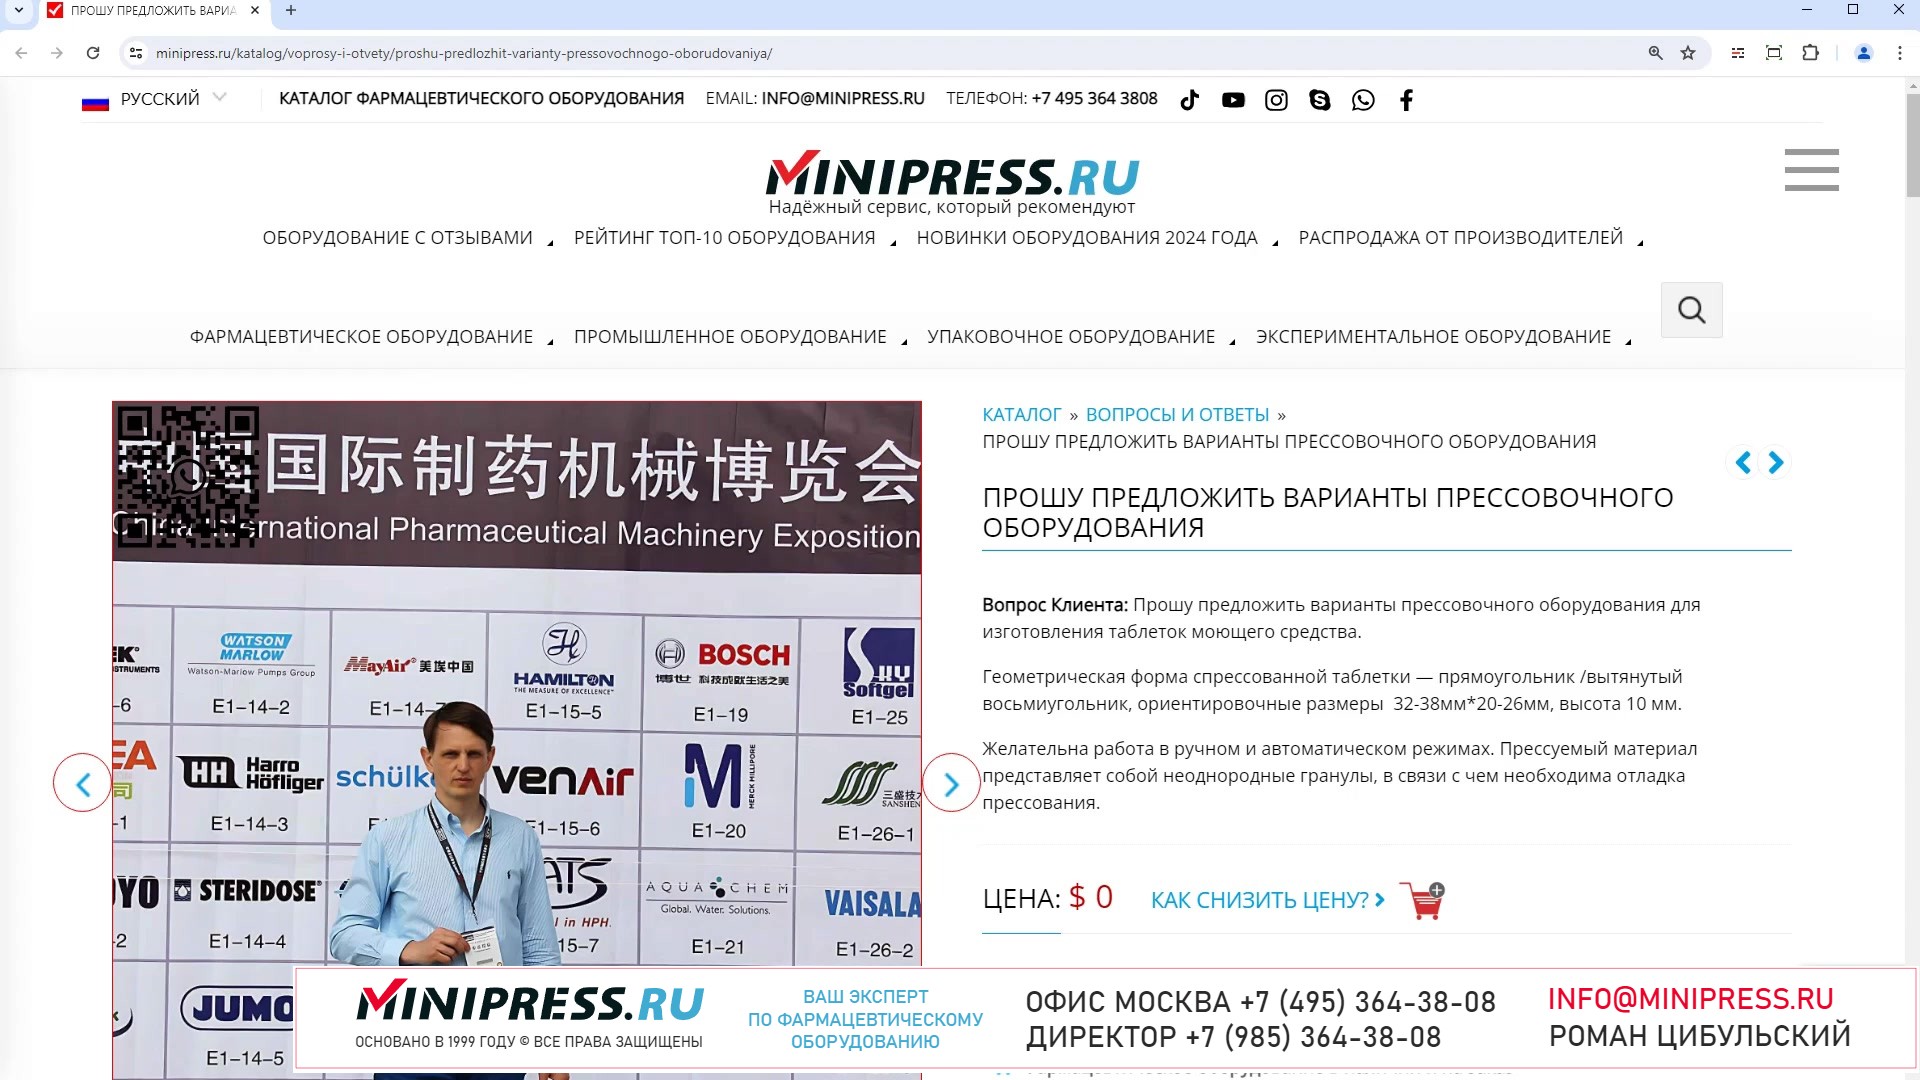 Minipress.ru Прошу предложить варианты прессовочного оборудования